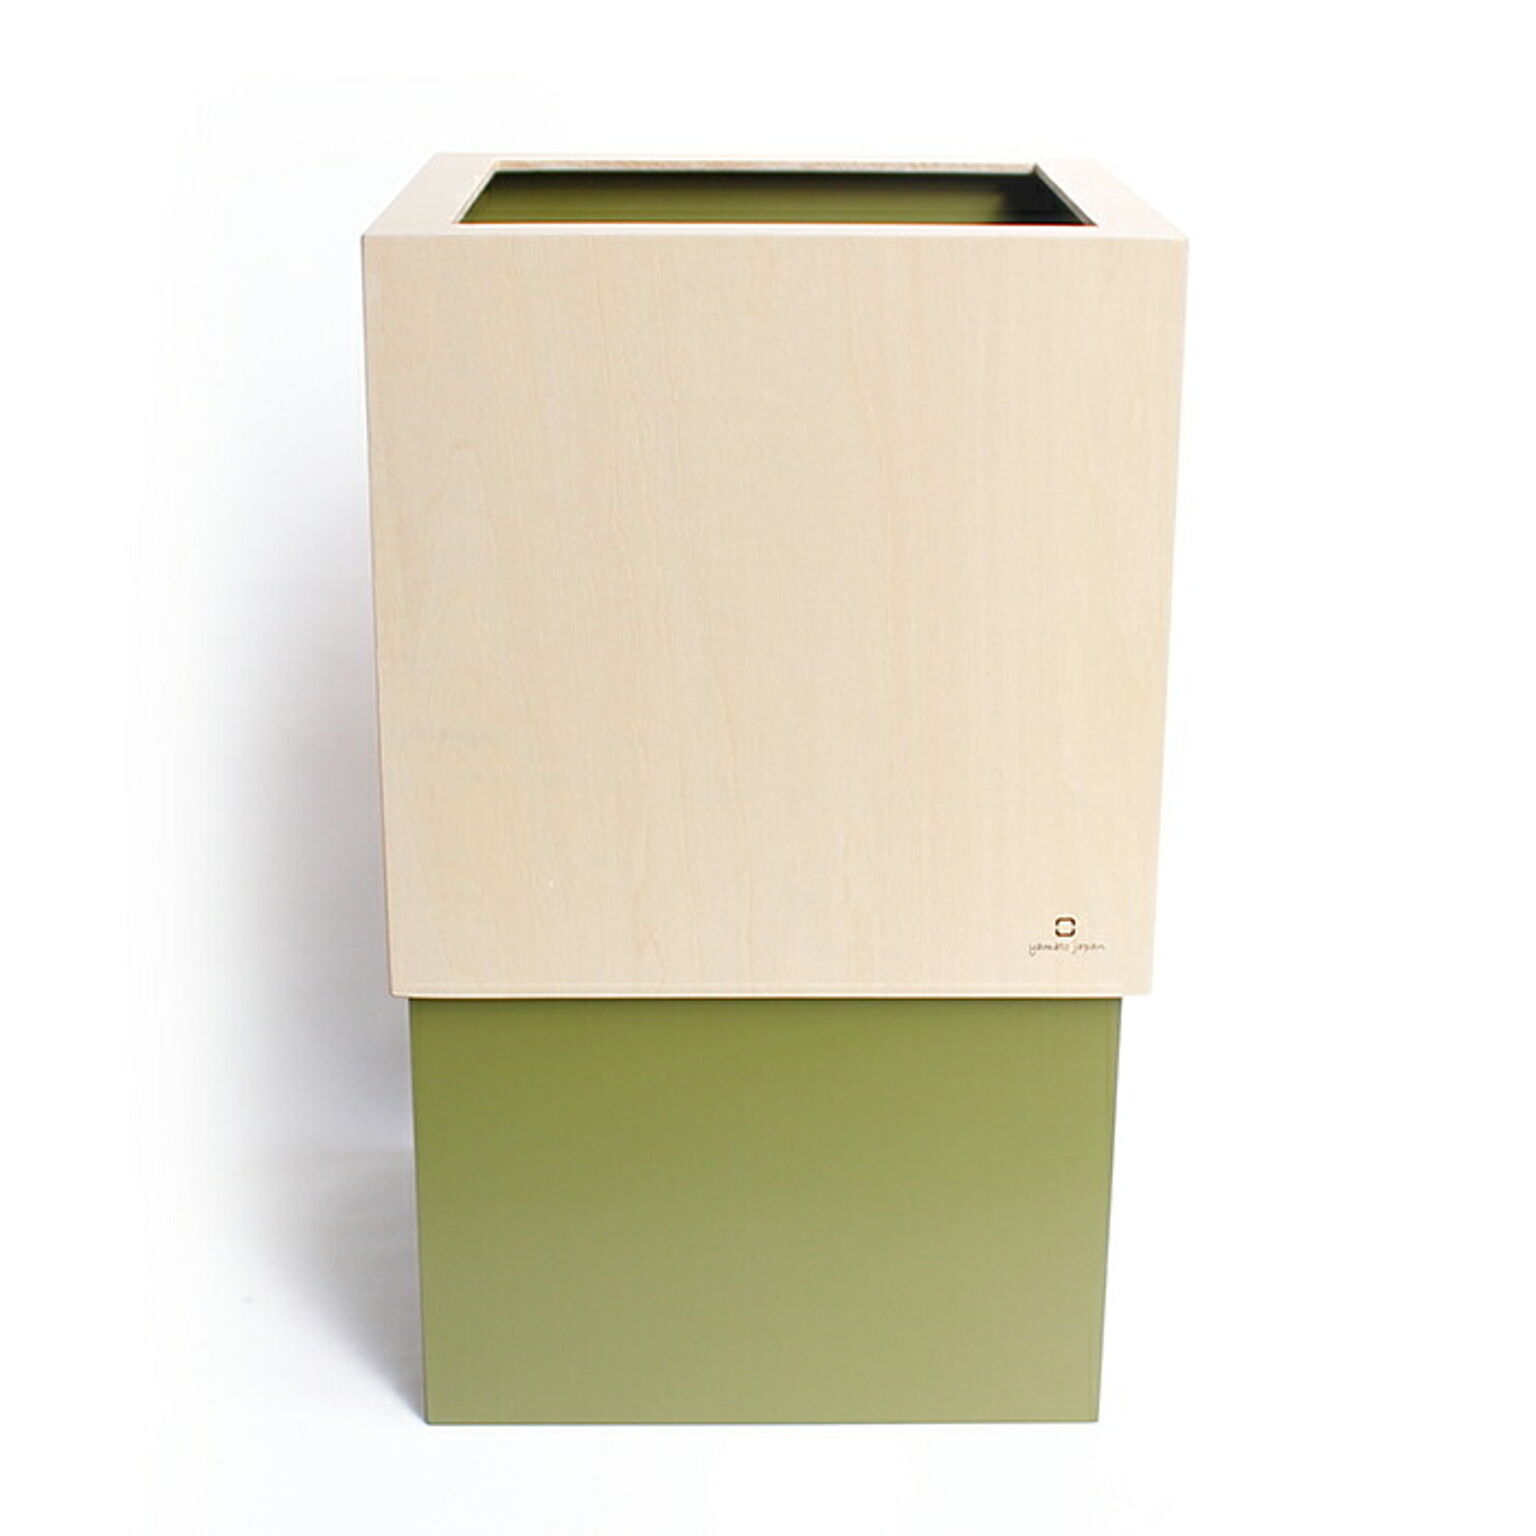 ゴミ箱 ダストボックス 北欧 ごみ箱 日本製 木製 4L 小さい シンプル ナチュラル 職人の手作り リビング W CUBE M ヤマト工芸